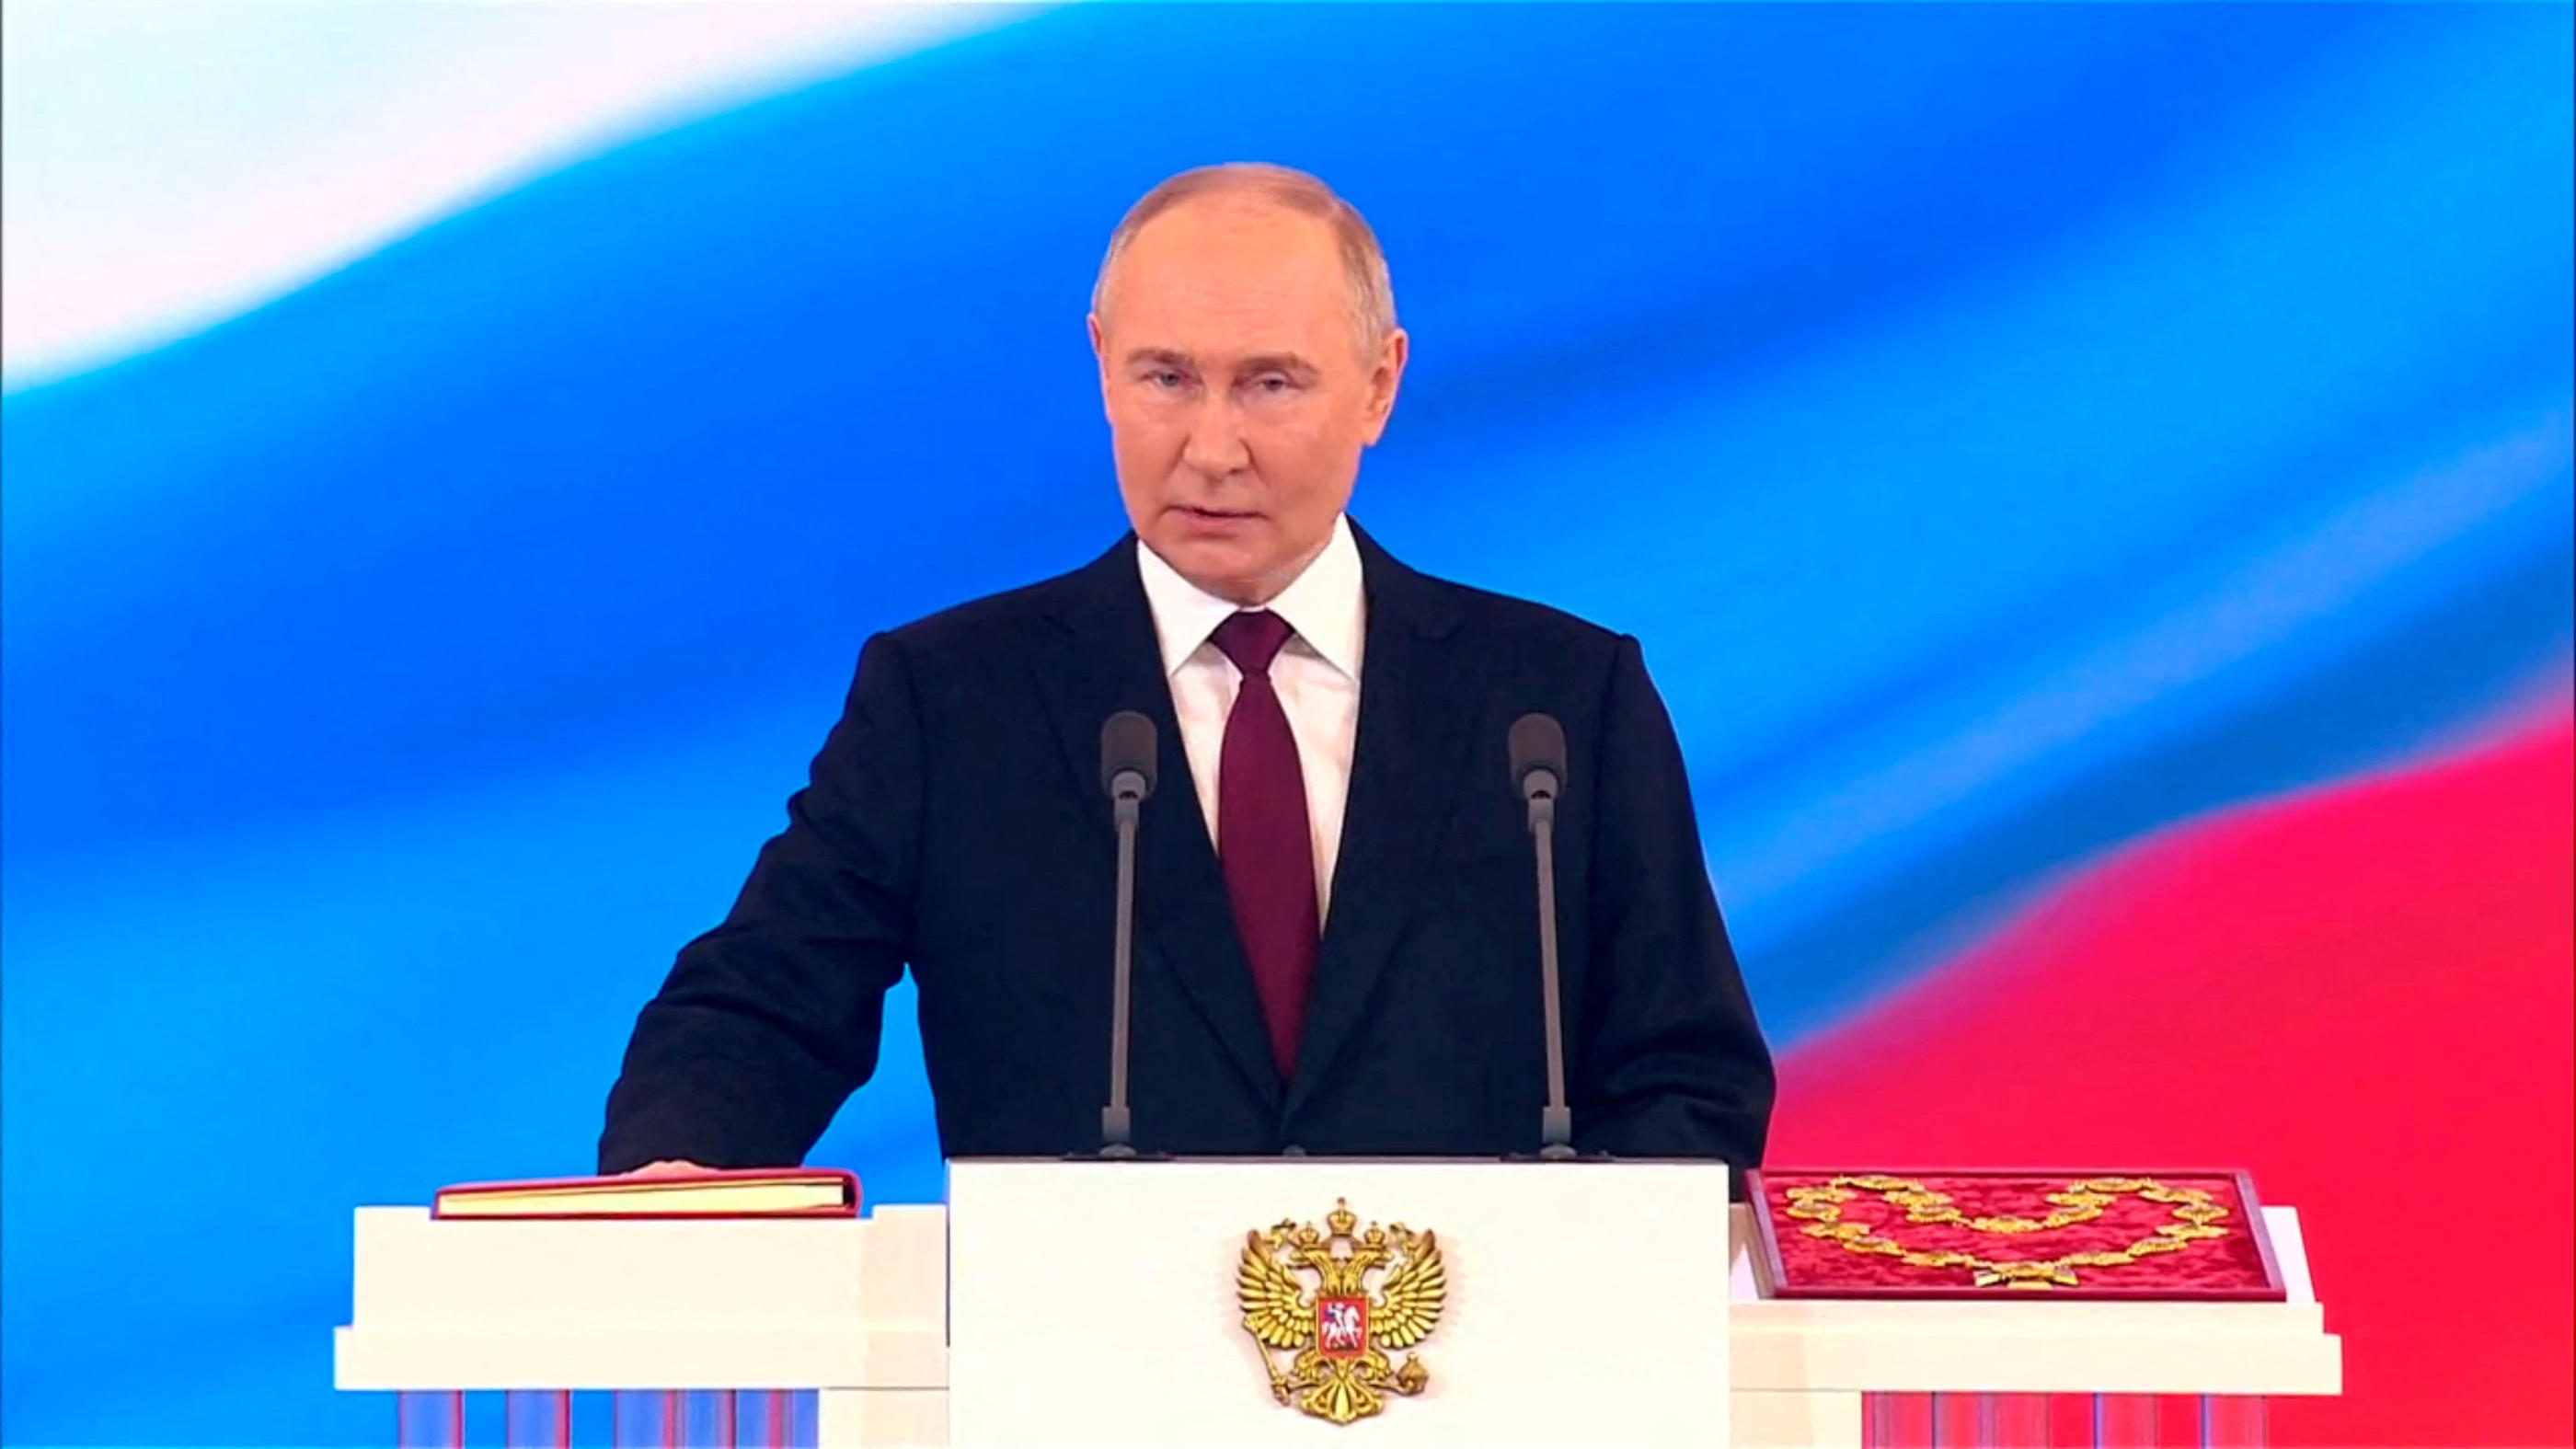 Vladimir Poutine a prêté serment sur la Constitution russe pour ouvrir officiellement son cinquième mandat. Kremlin.ru/Handout via REUTERS